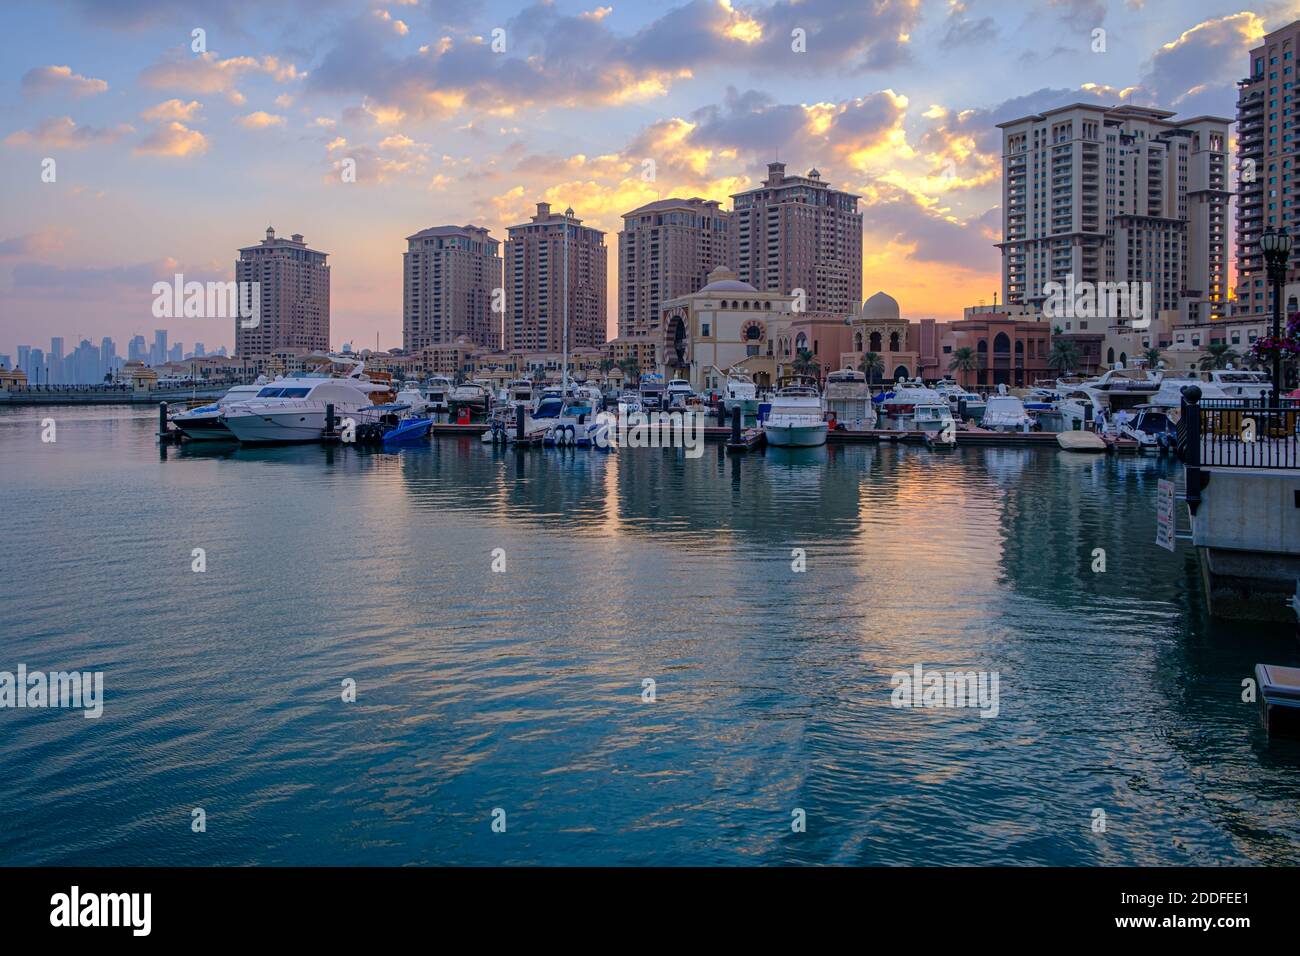 La perla Marina di Doha Qatar vista diurna con yacht in primo piano, edifici e nuvole nel cielo in background Foto Stock